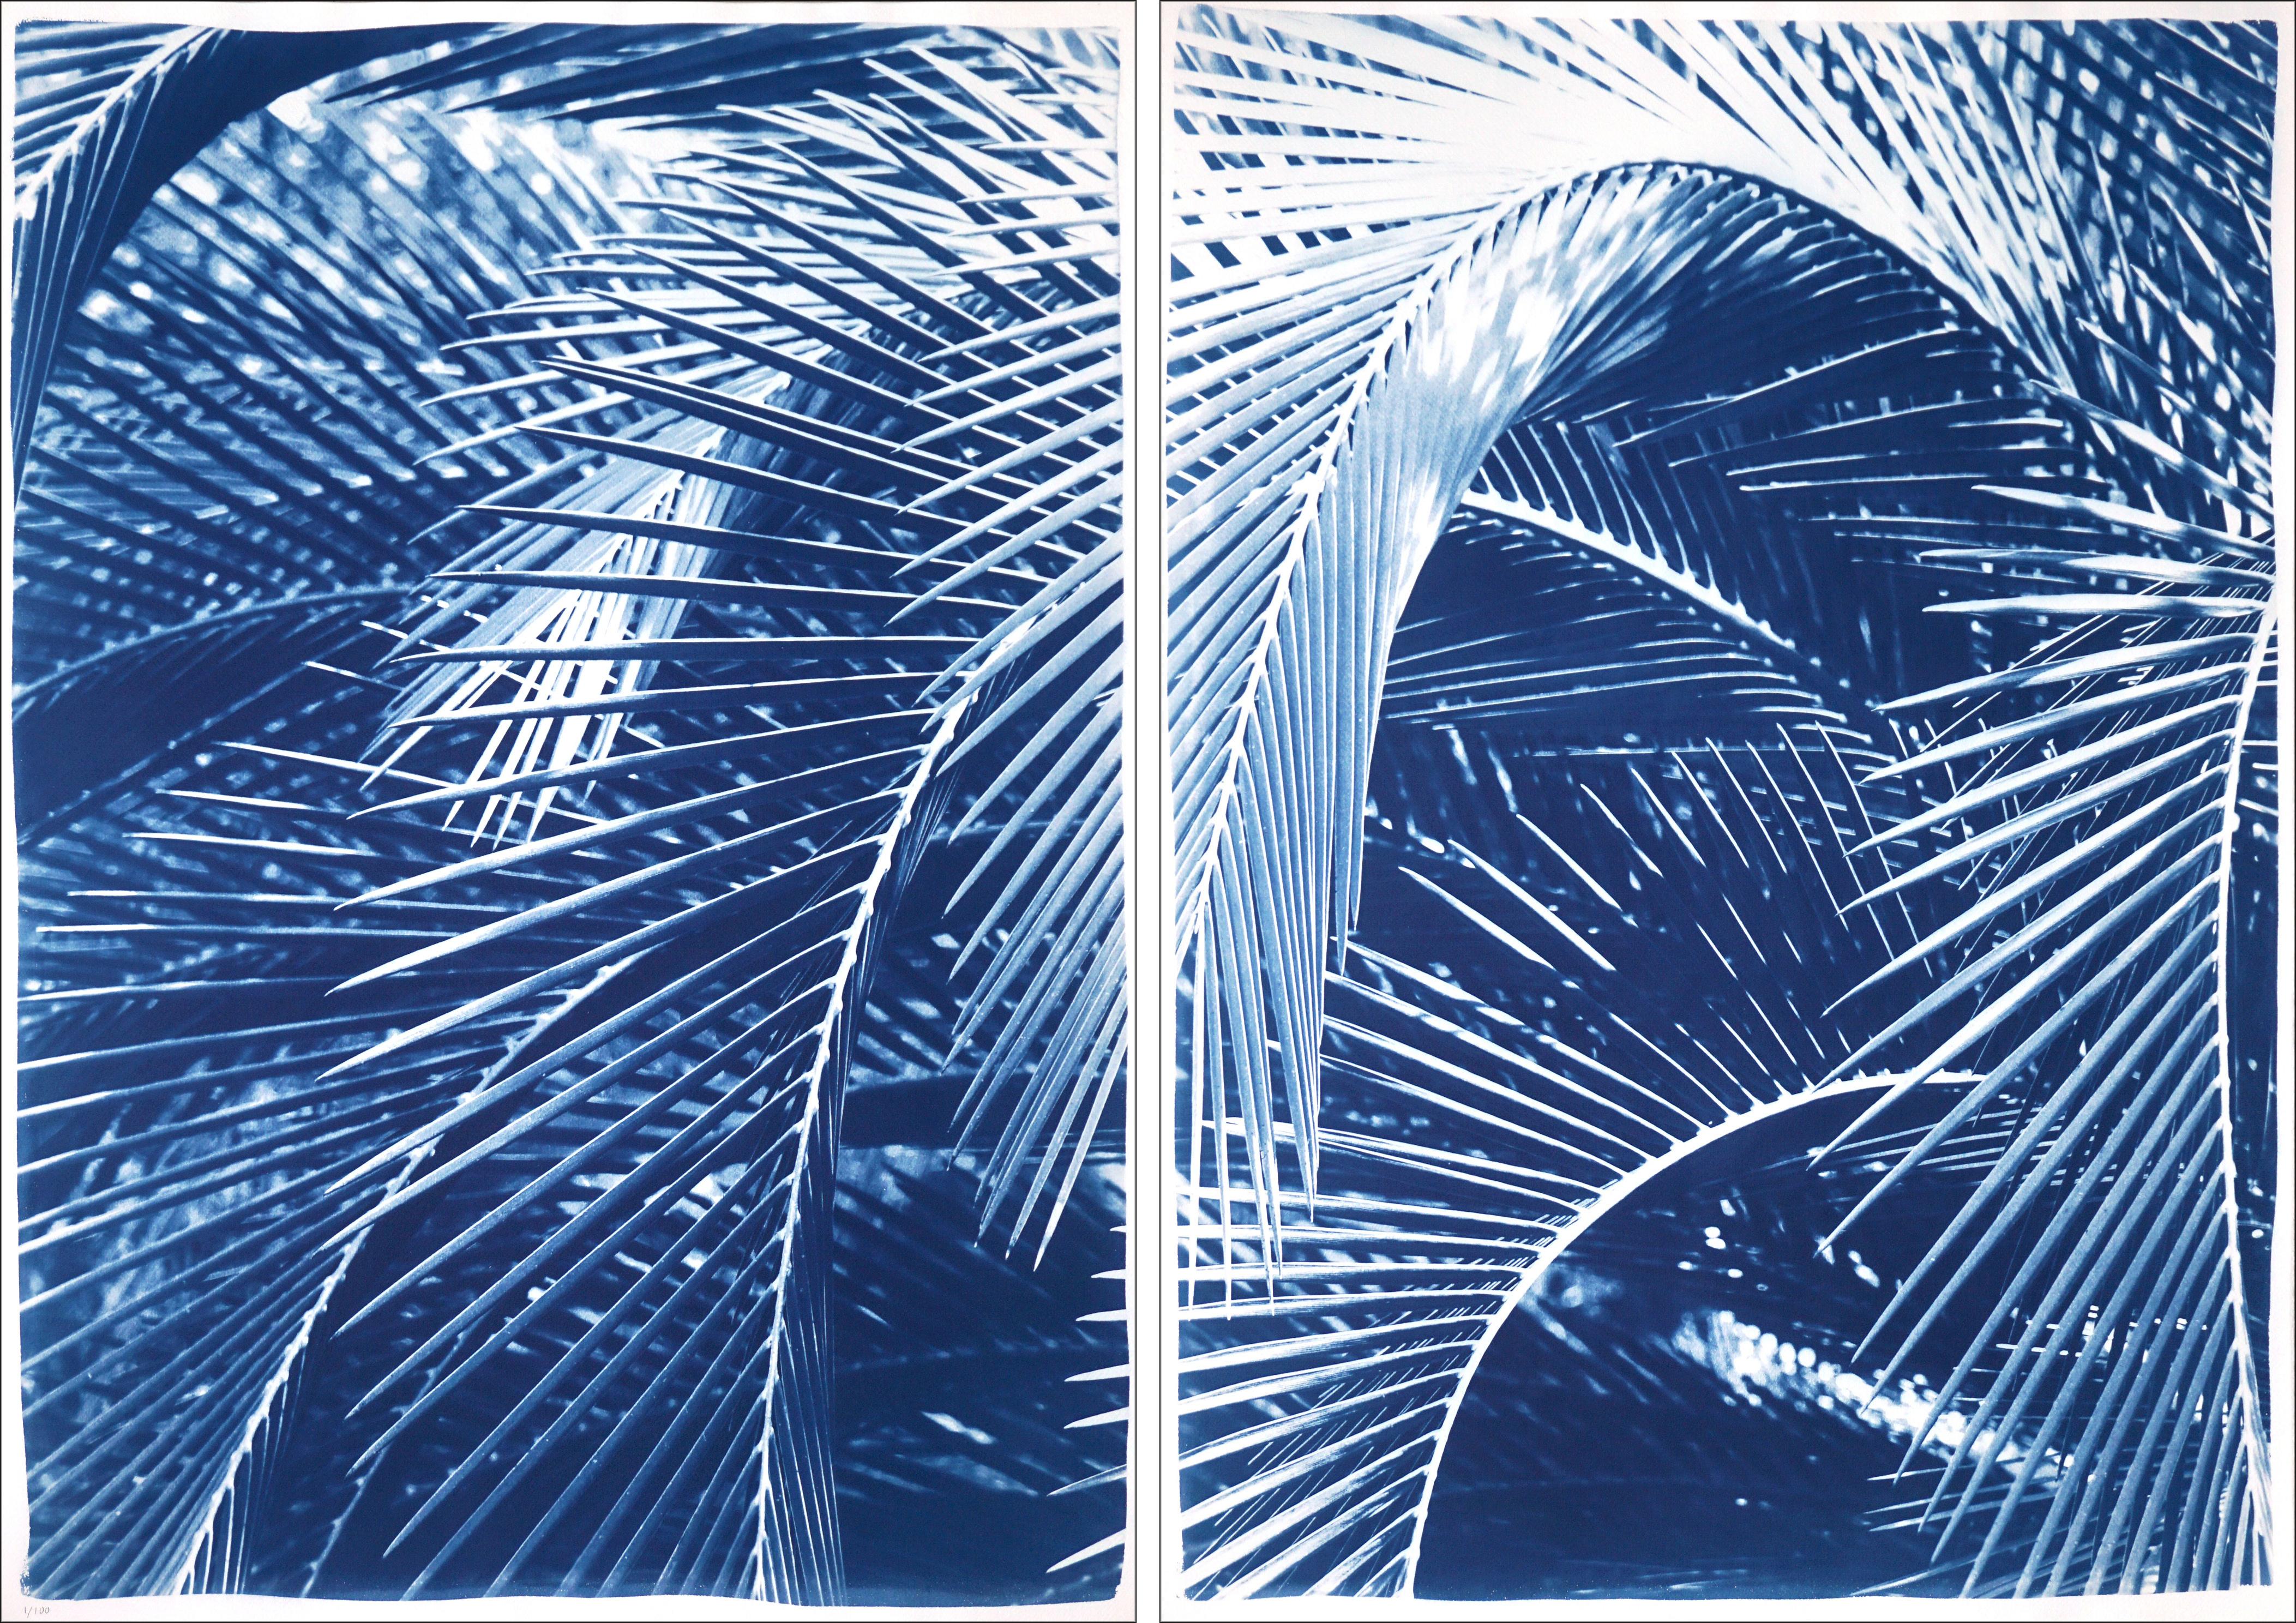 Landscape Art Kind of Cyan - Bushes de palmiers luxuriants, diptyque botanique, nature morte dans des tons bleus, style tropical